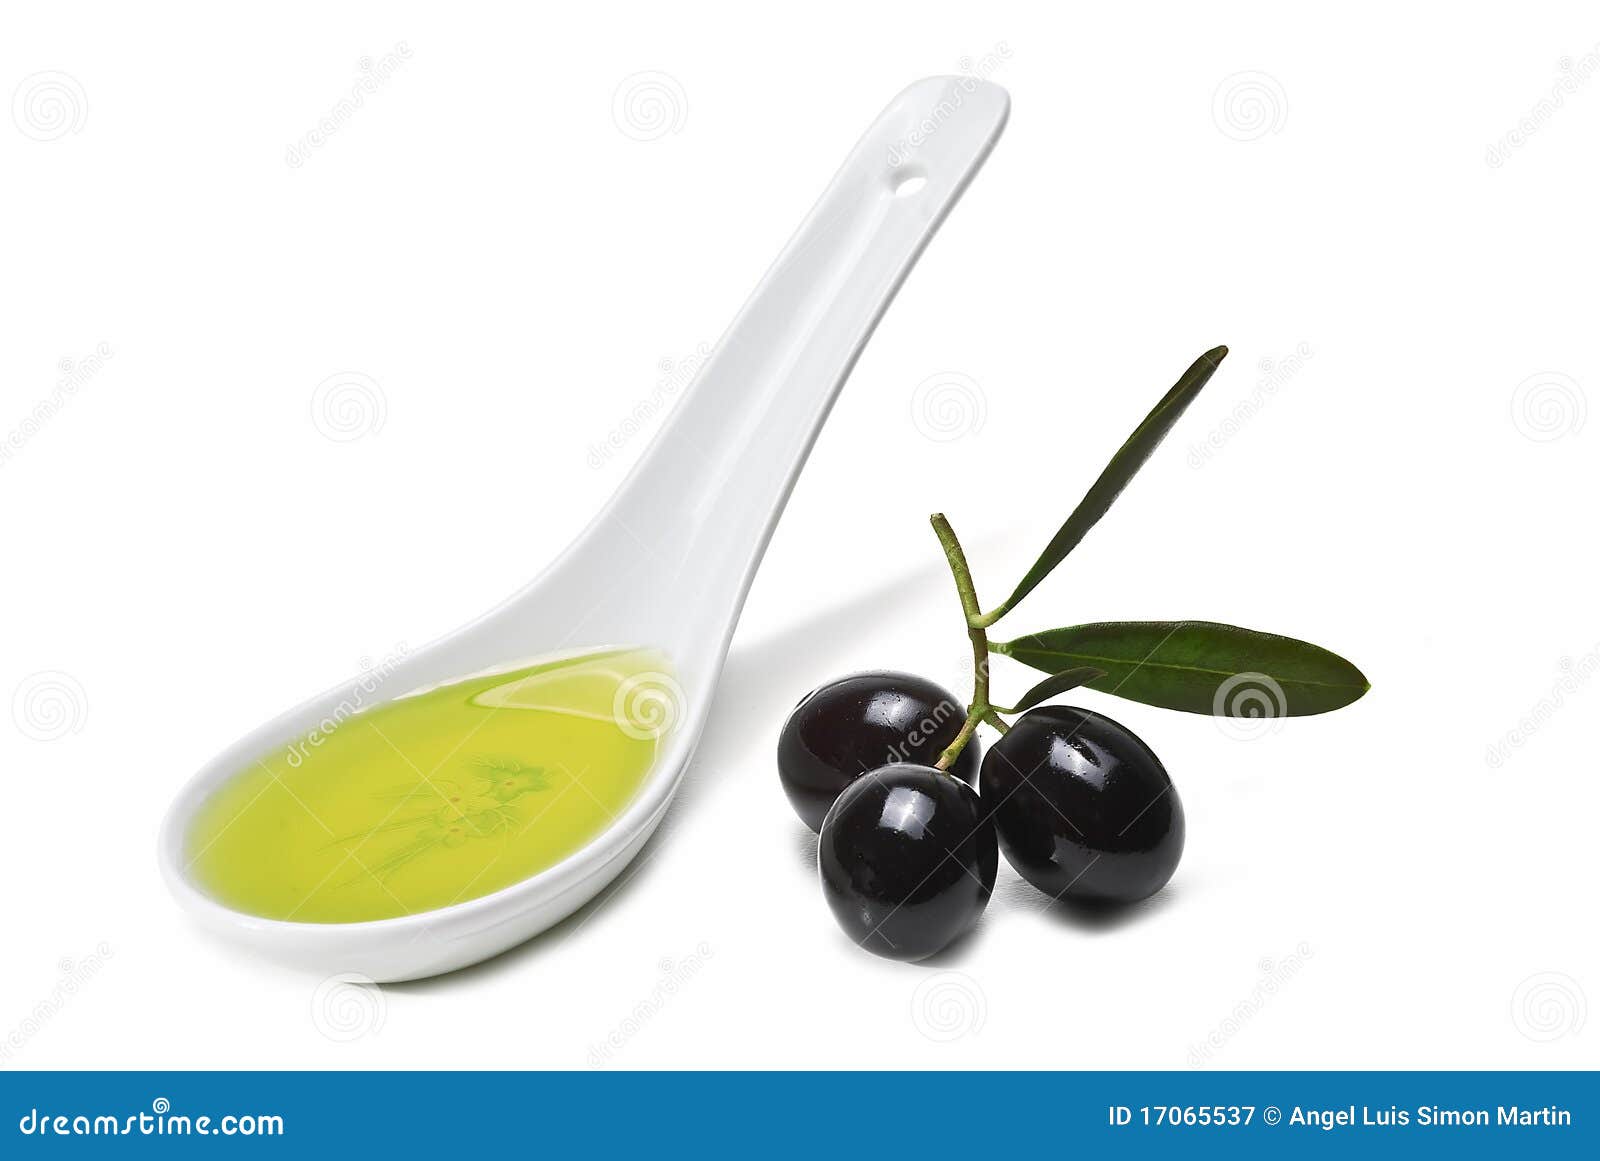 0 5 ч л масло. Ложечка для оливок. Ложка оливкового масла. Ложка с оливковым маслом на белом фоне. Интересная ложка для оливок.